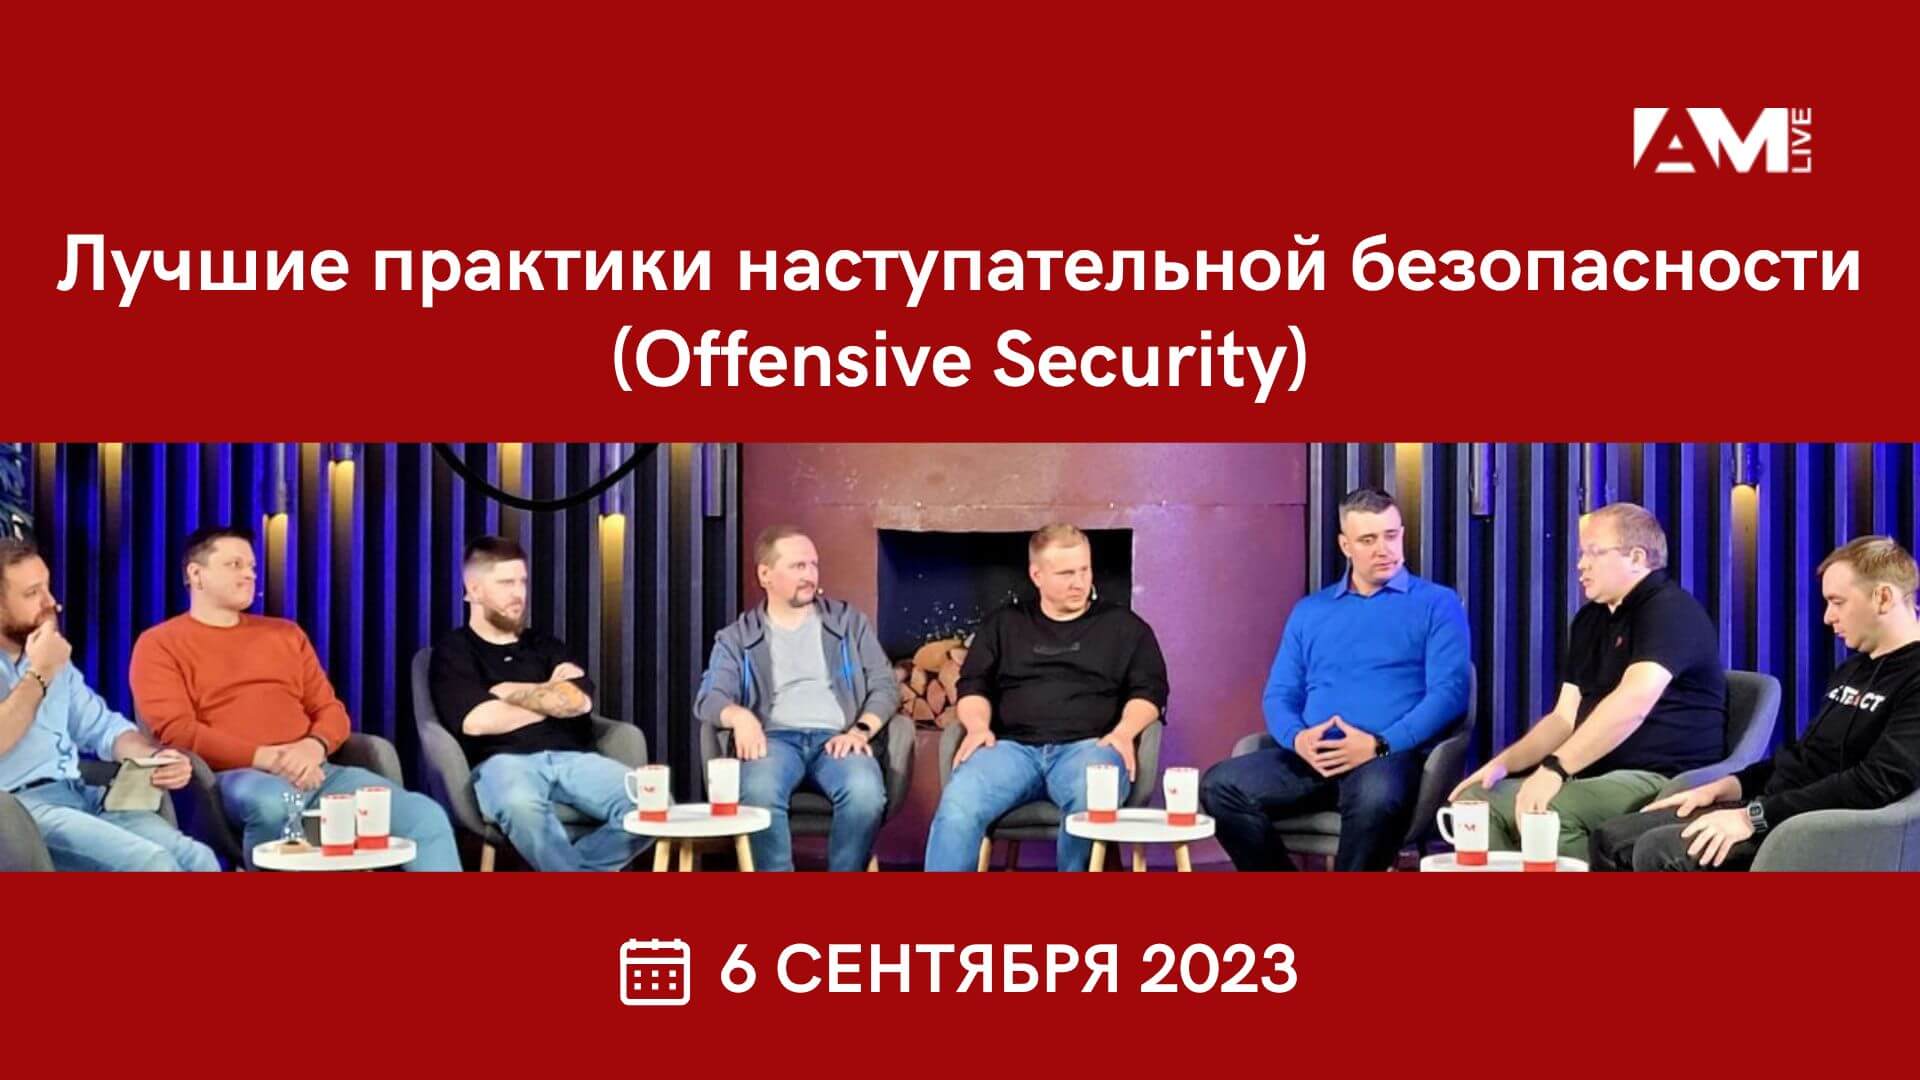 Евгений Царев принял участие в  конференции Лучшие практики наступательной безопасности